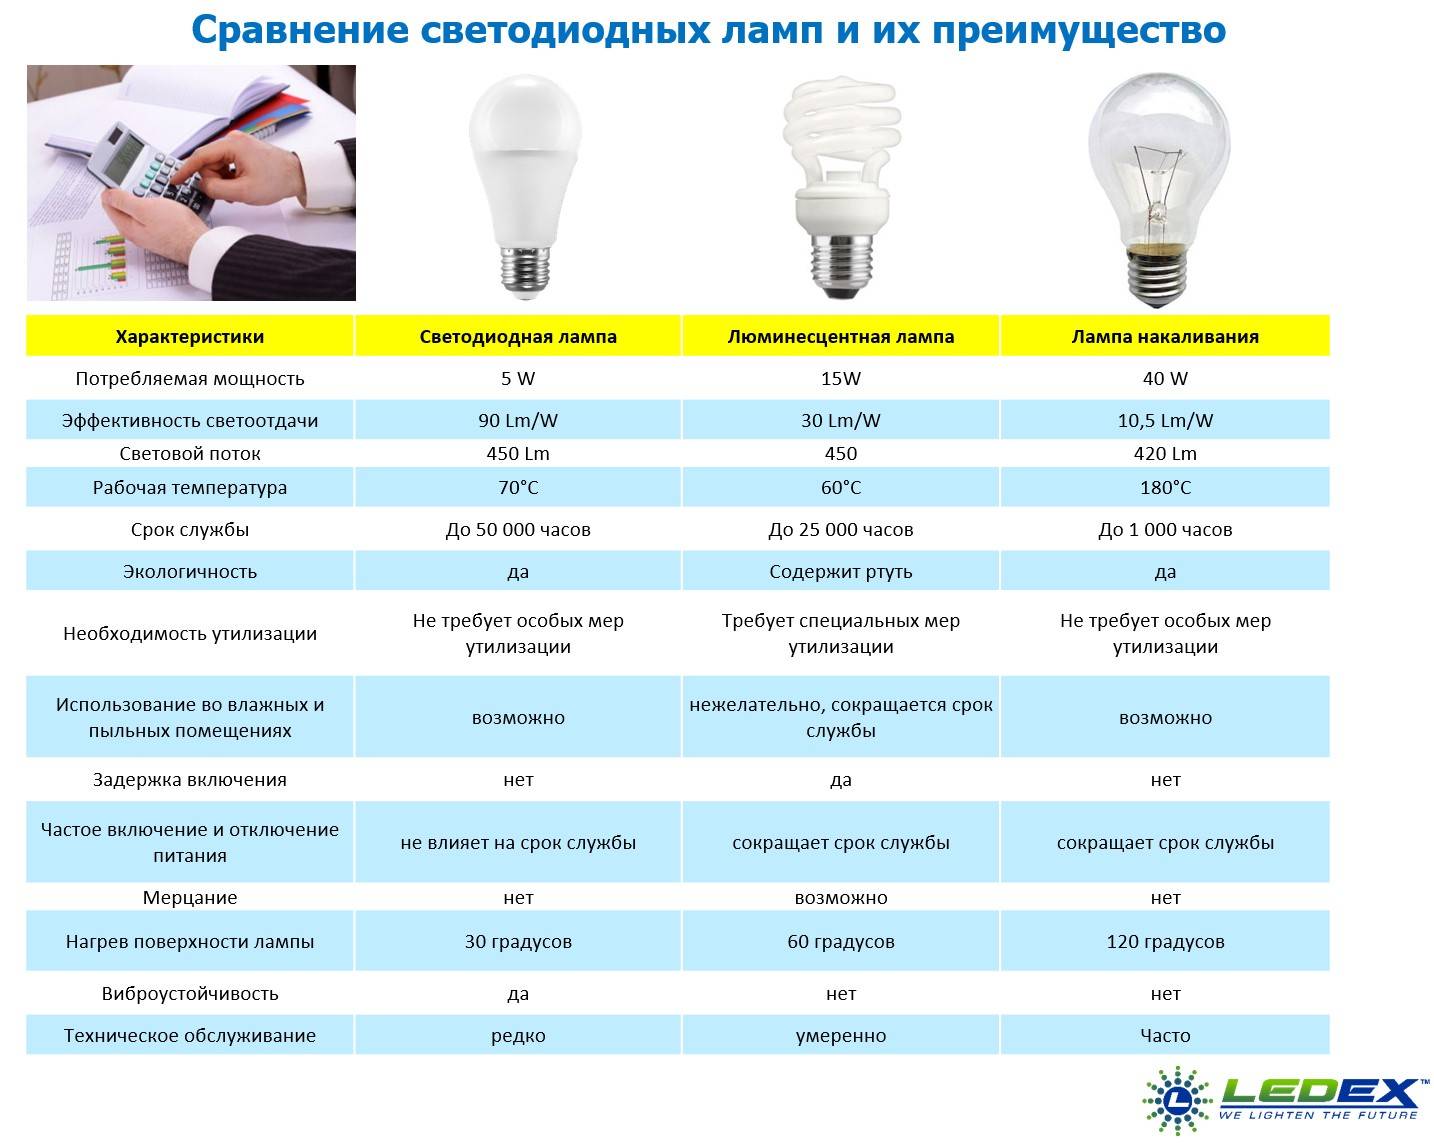 Таблицы мощности и потребление электроэнергии энергосберегающими светодиодными лампами